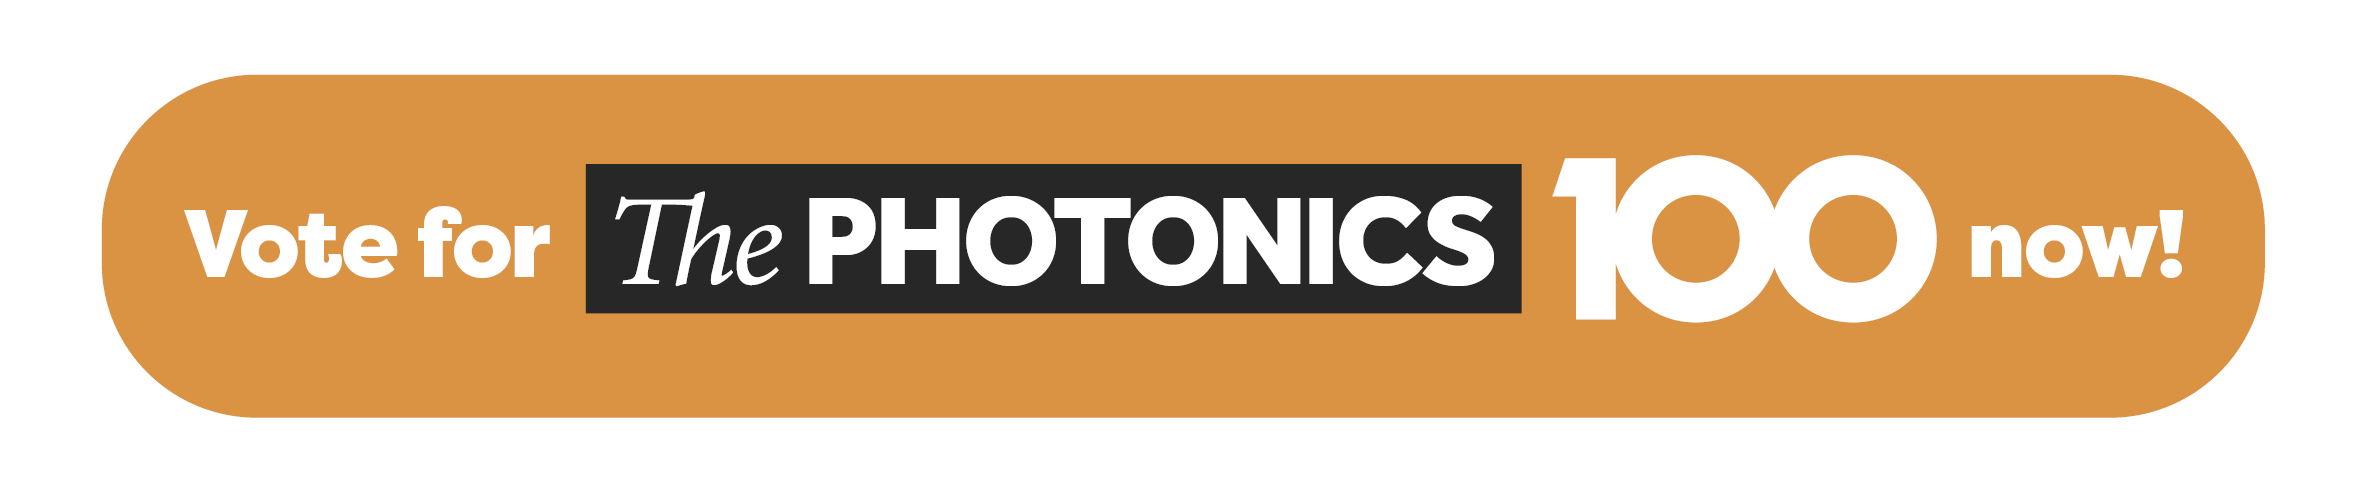 Photonics100 Vote now button